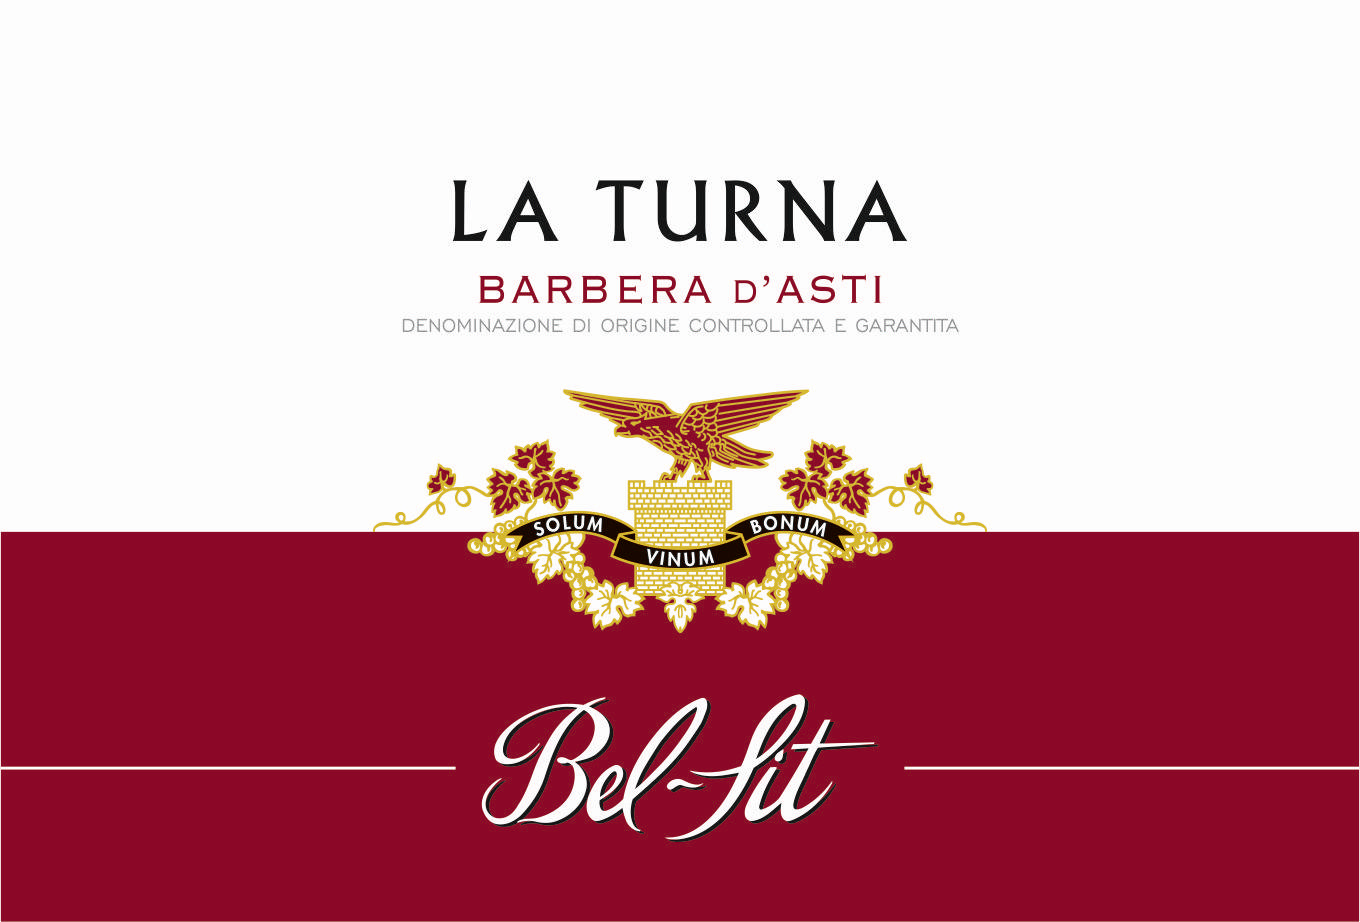 Barbera d'Asti DOCG La Turna 2018 - Bel Sit (etichetta)